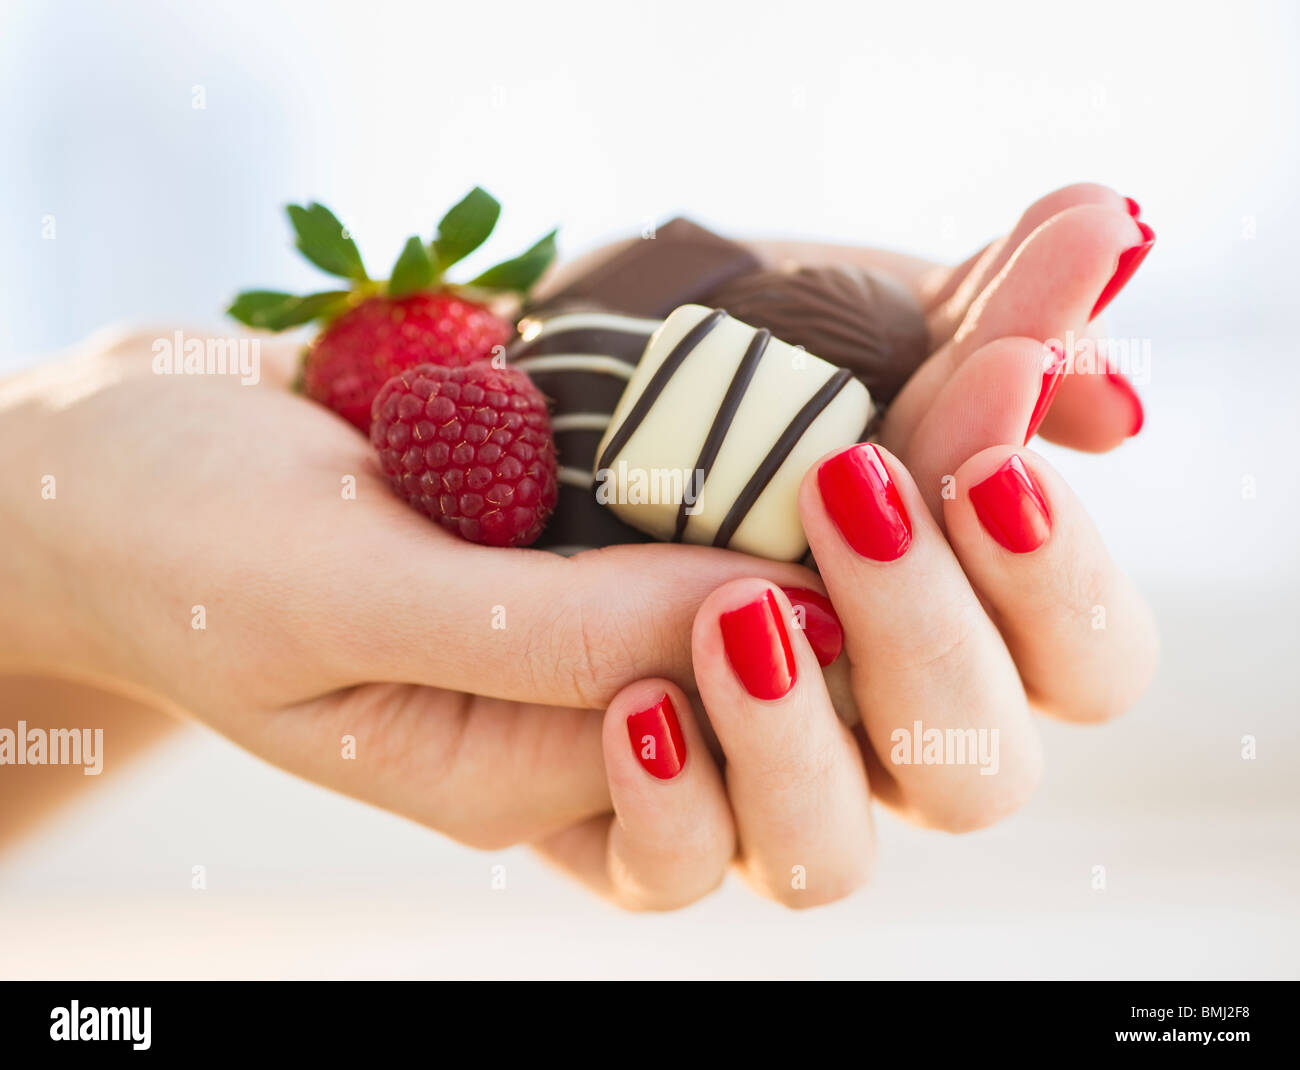 Main tenant un chocolat framboise et une fraise Banque D'Images